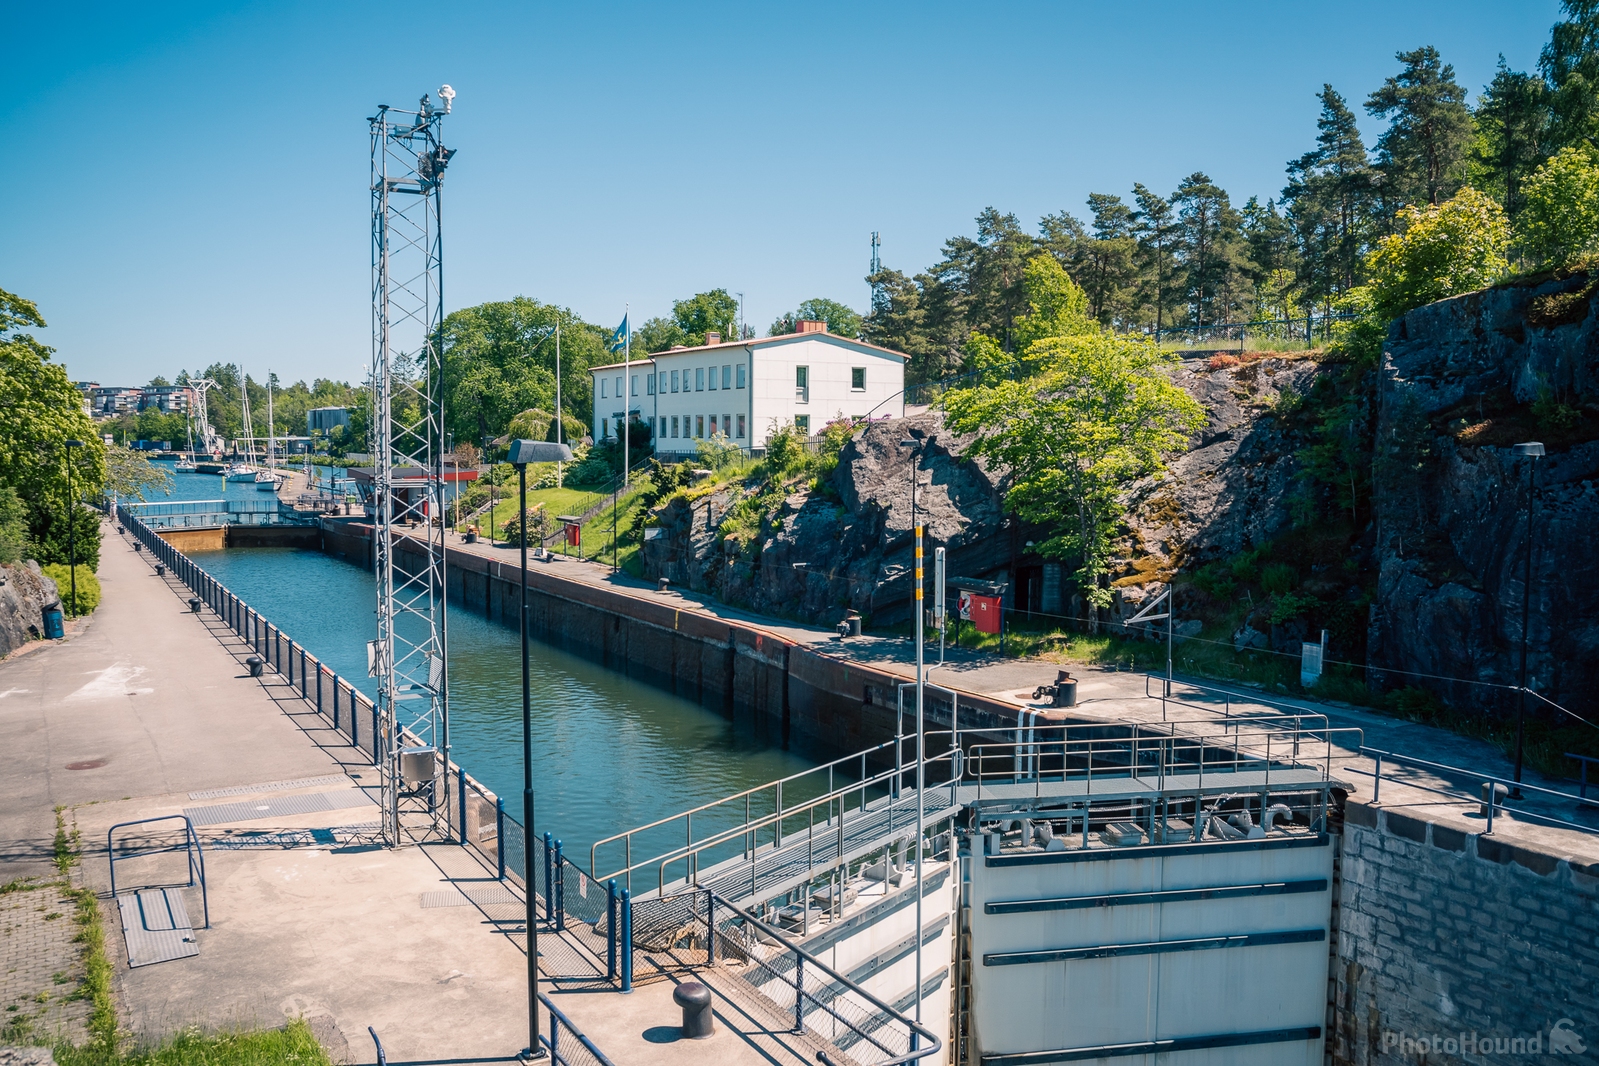 Image of Trollhättan - canal locks by James Billings.